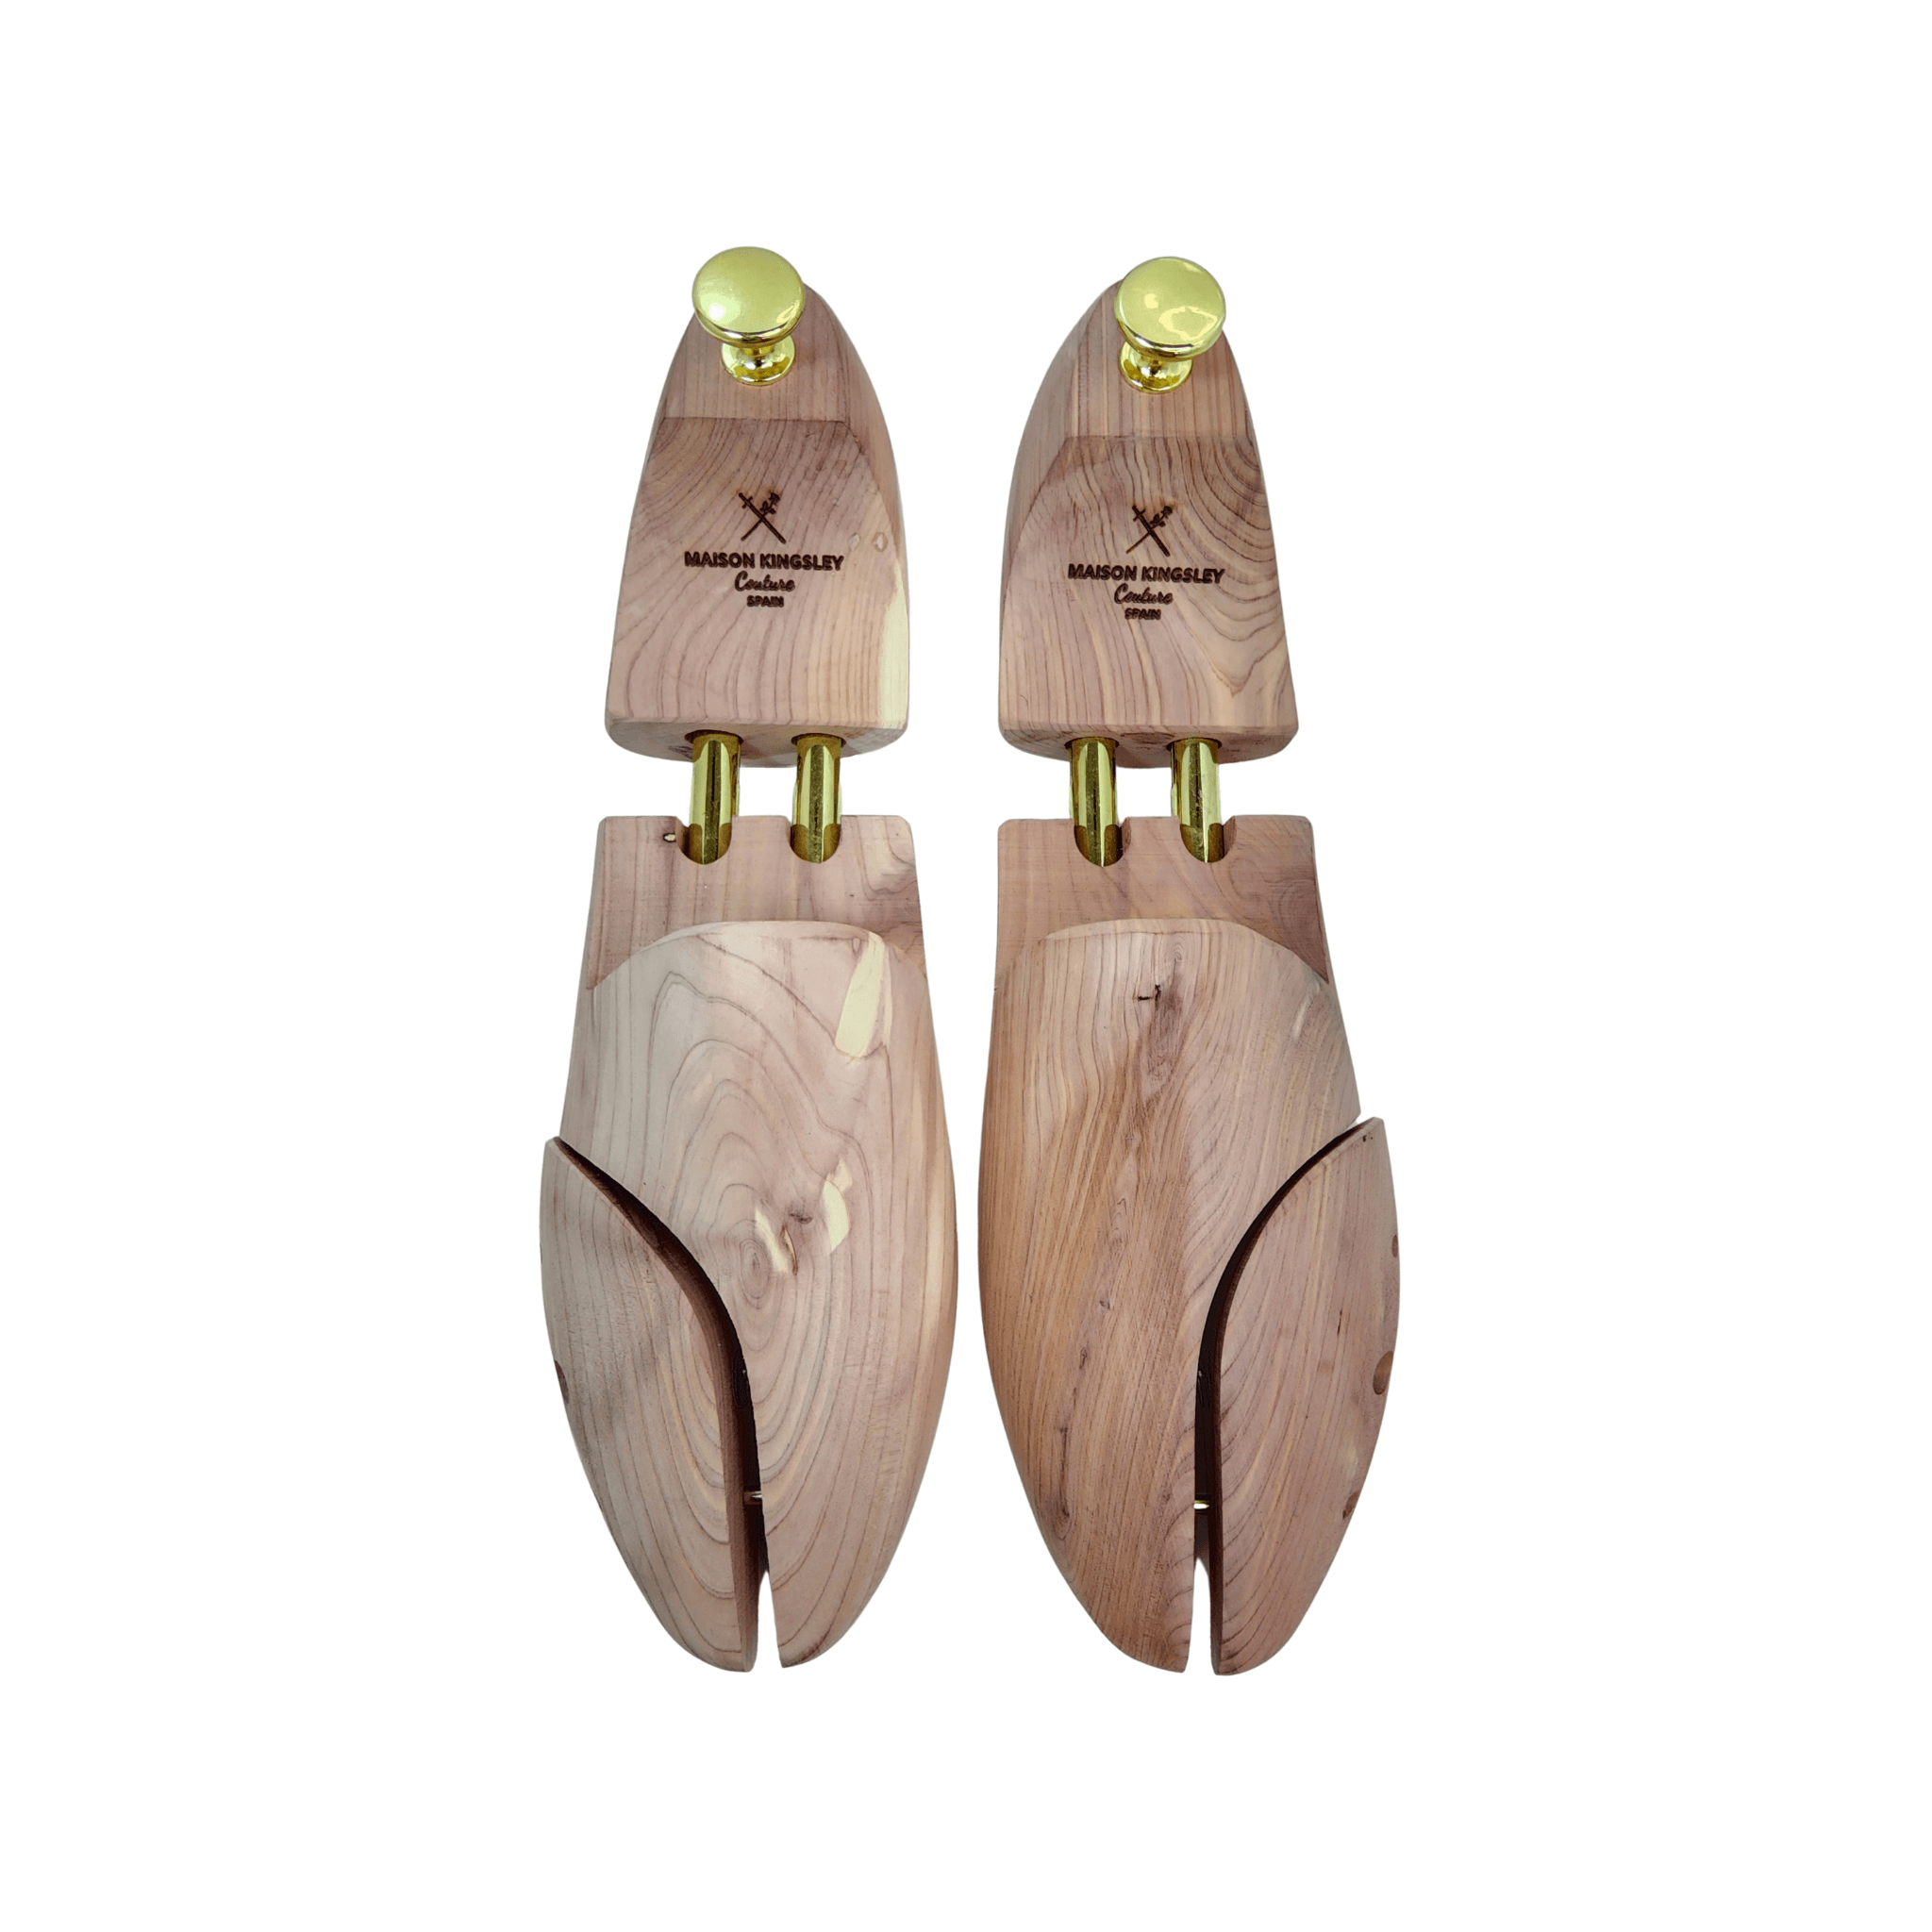 Men's Double Monk Boots in Grey Hand-painted Patina - Maison de Kingsley Couture Harmonie et Fureur Spain